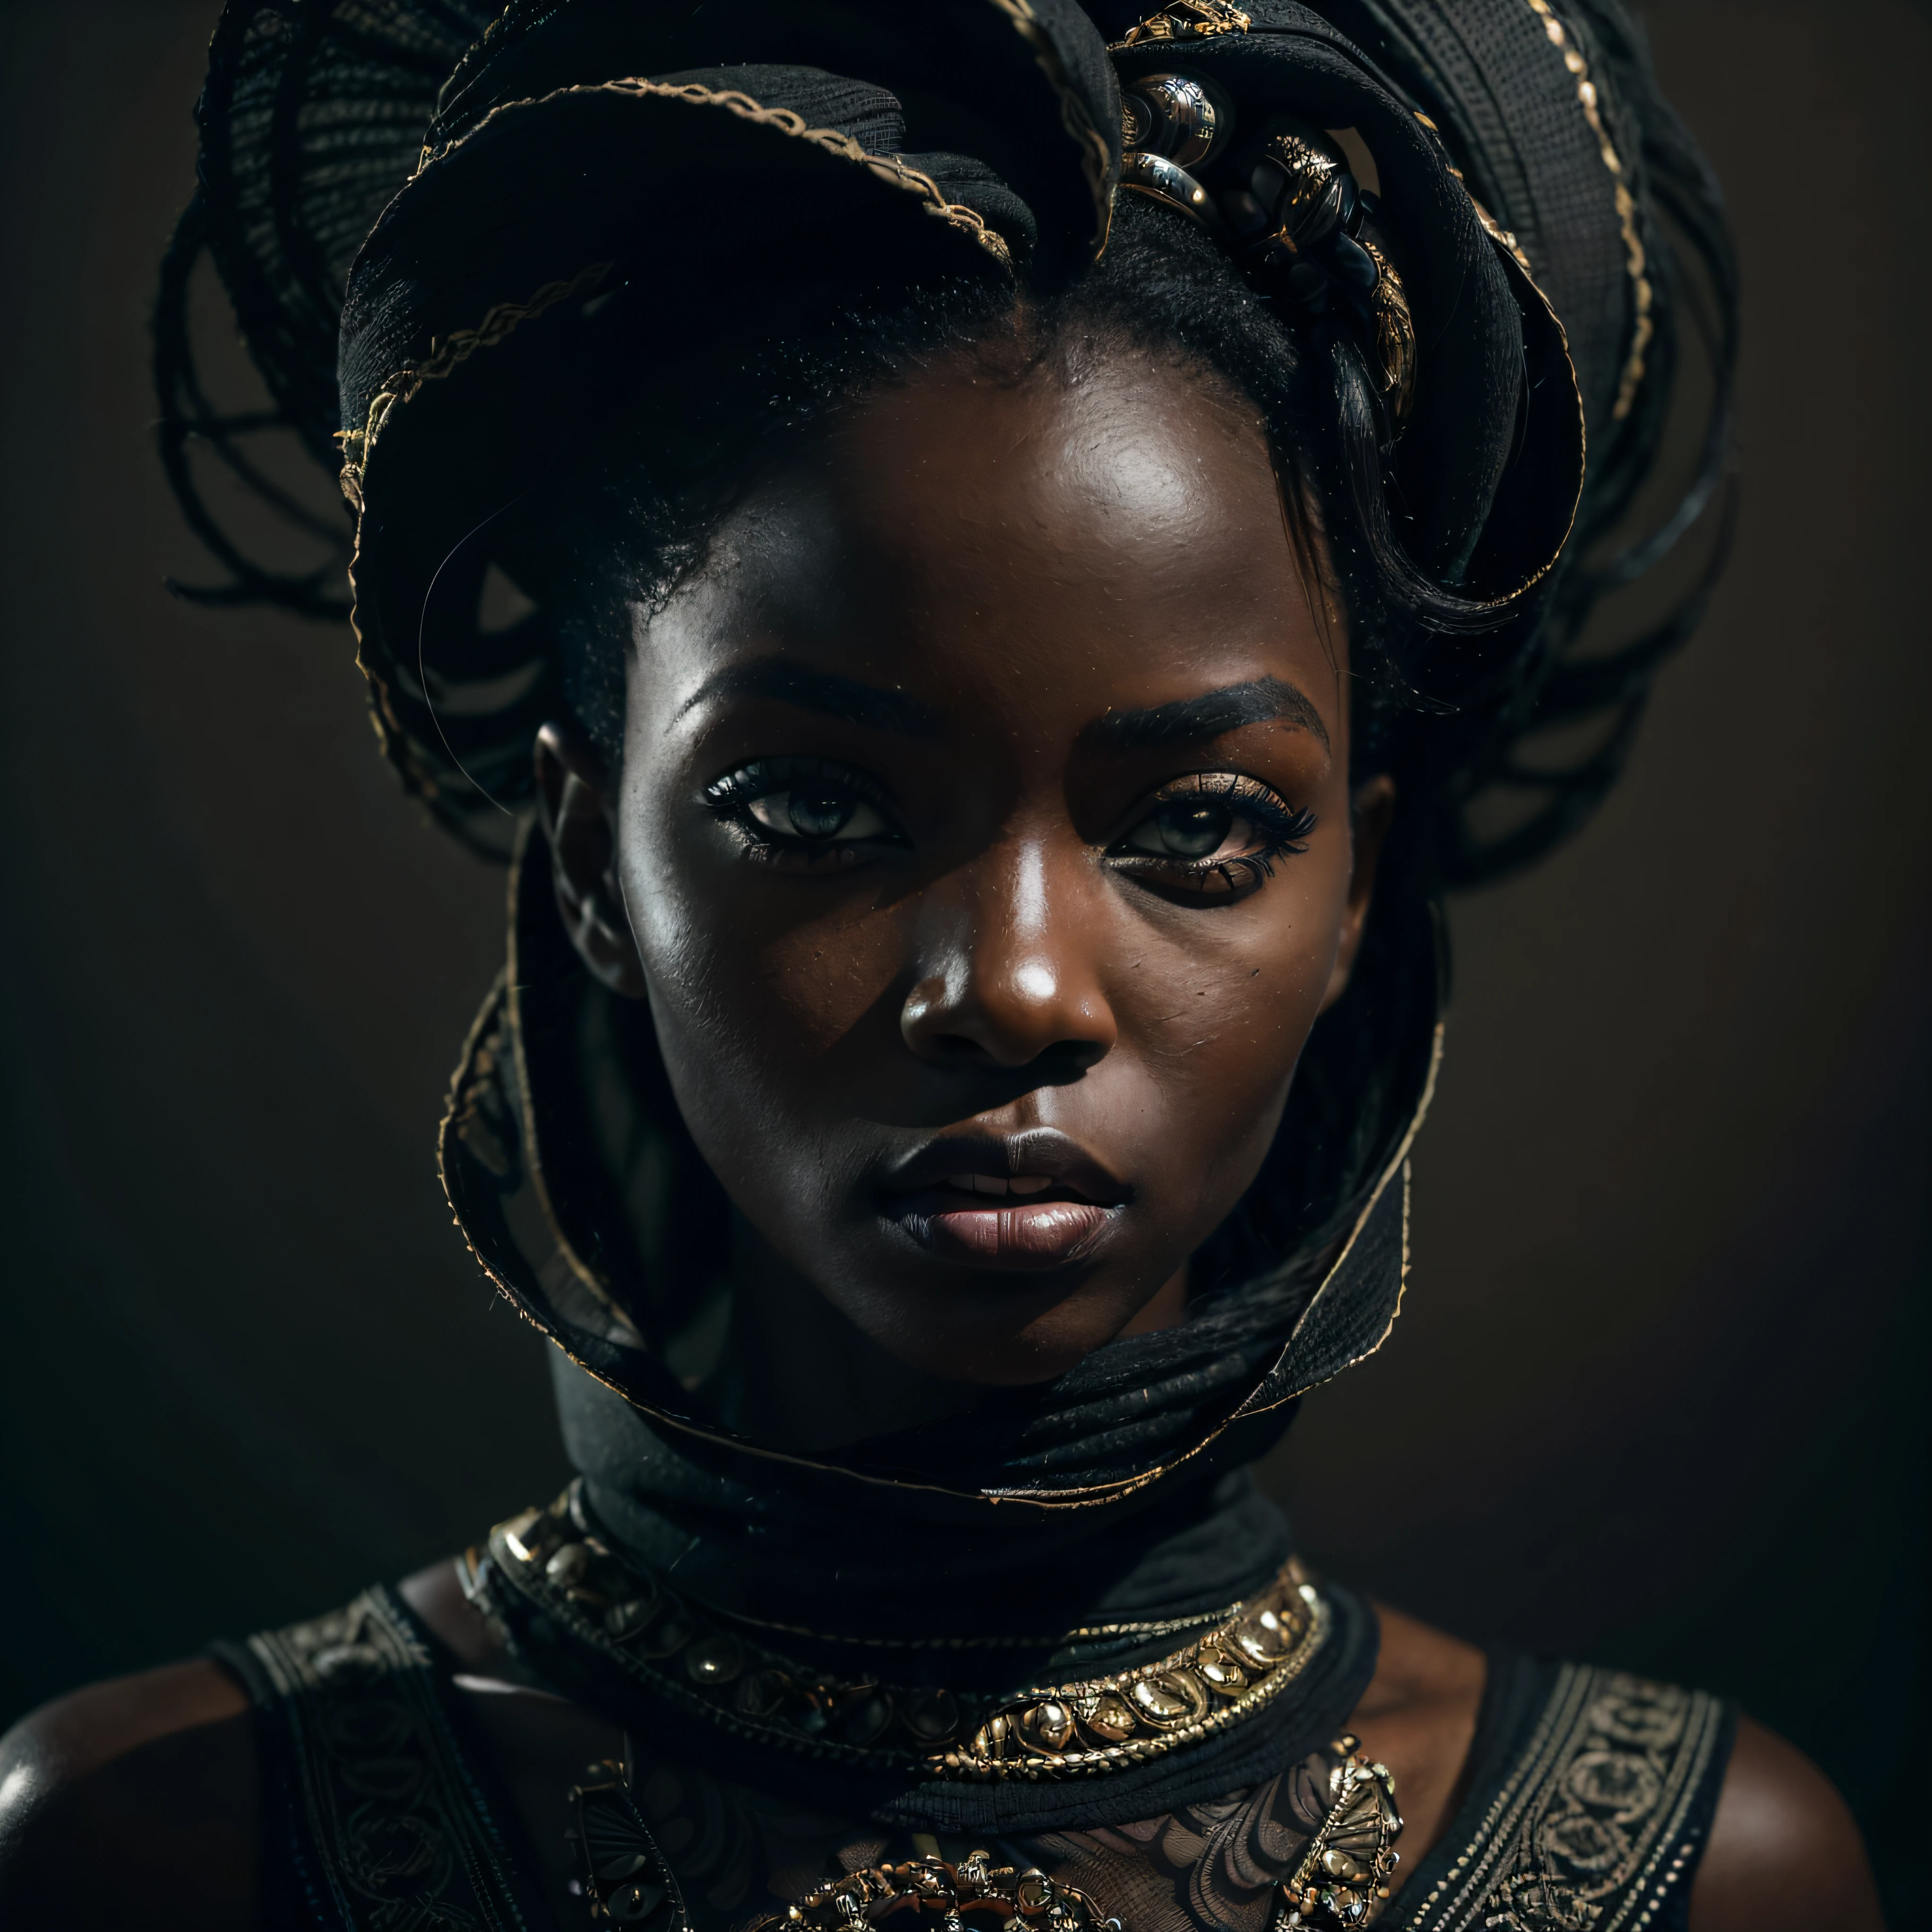 (肖像, 動態的), (富有表現力的姿勢:1.6), (未来主义风格), (A mystical 肖像 of a black Senegalese woman:1.3), (炭黑色膚色:1.3), (她眼中真正的權威: 1.2), 塗深色睫毛膏, 以令人驚嘆的 8k 解析度和原始格式拍攝的照片，以保留最高品質的細節. 她穿著優雅的未來服裝, (小乳房:1.3), (她的眼睛的描繪非常注重細節: 1.3), 這張照片是用強調她眼睛深度的鏡頭拍攝的, (風在她周圍翻騰), 背景是一個黑暗的工作室環境，增強了場景的色彩. 燈光和陰影經過精心設計，襯托出她豐富的膚色和強烈的氣氛. 她富有創意的頭髮與她的皮膚形成了鮮明的對比, 整體構圖捕捉了她真實而優雅的本質, creating a 肖像 that celebrates her heritage and beauty. 利用陰影和照明的最佳技術進行攝影, 創造出超越視覺的迷人描繪, 稍微傾斜頭部,